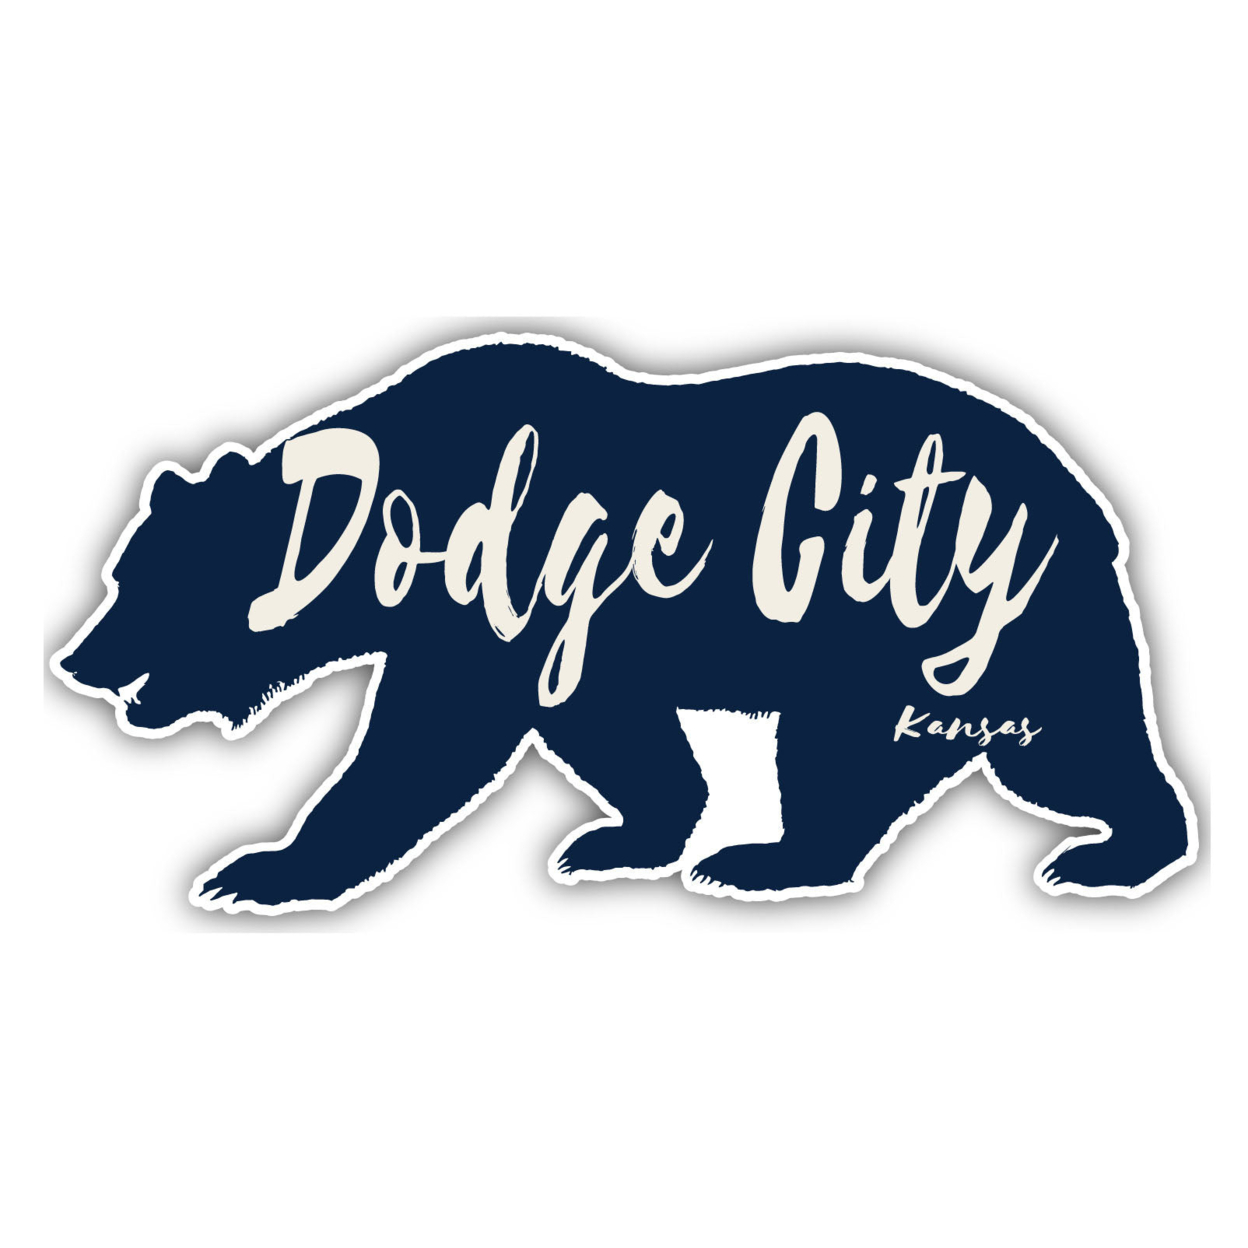 Dodge City Kansas Souvenir Decorative Stickers (Choose Theme And Size) - Single Unit, 2-Inch, Tent